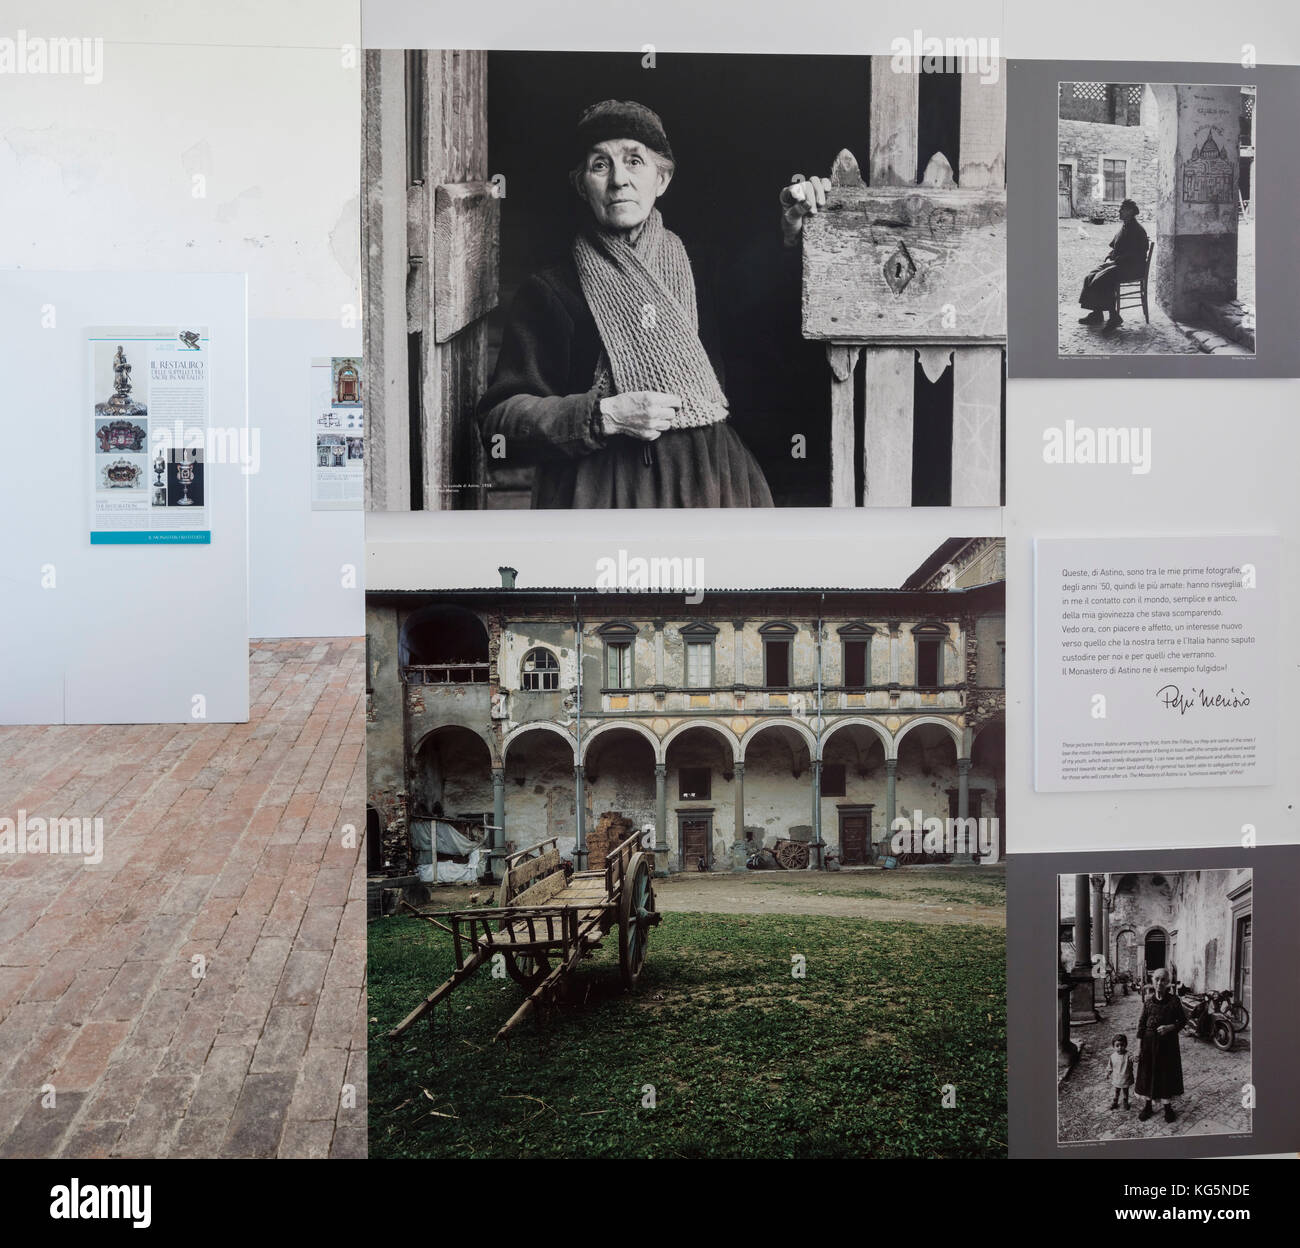 Photos de vie du passé au musée, monastère de astino, longuelo, province de Bergame, Lombardie, Italie, Europe Banque D'Images